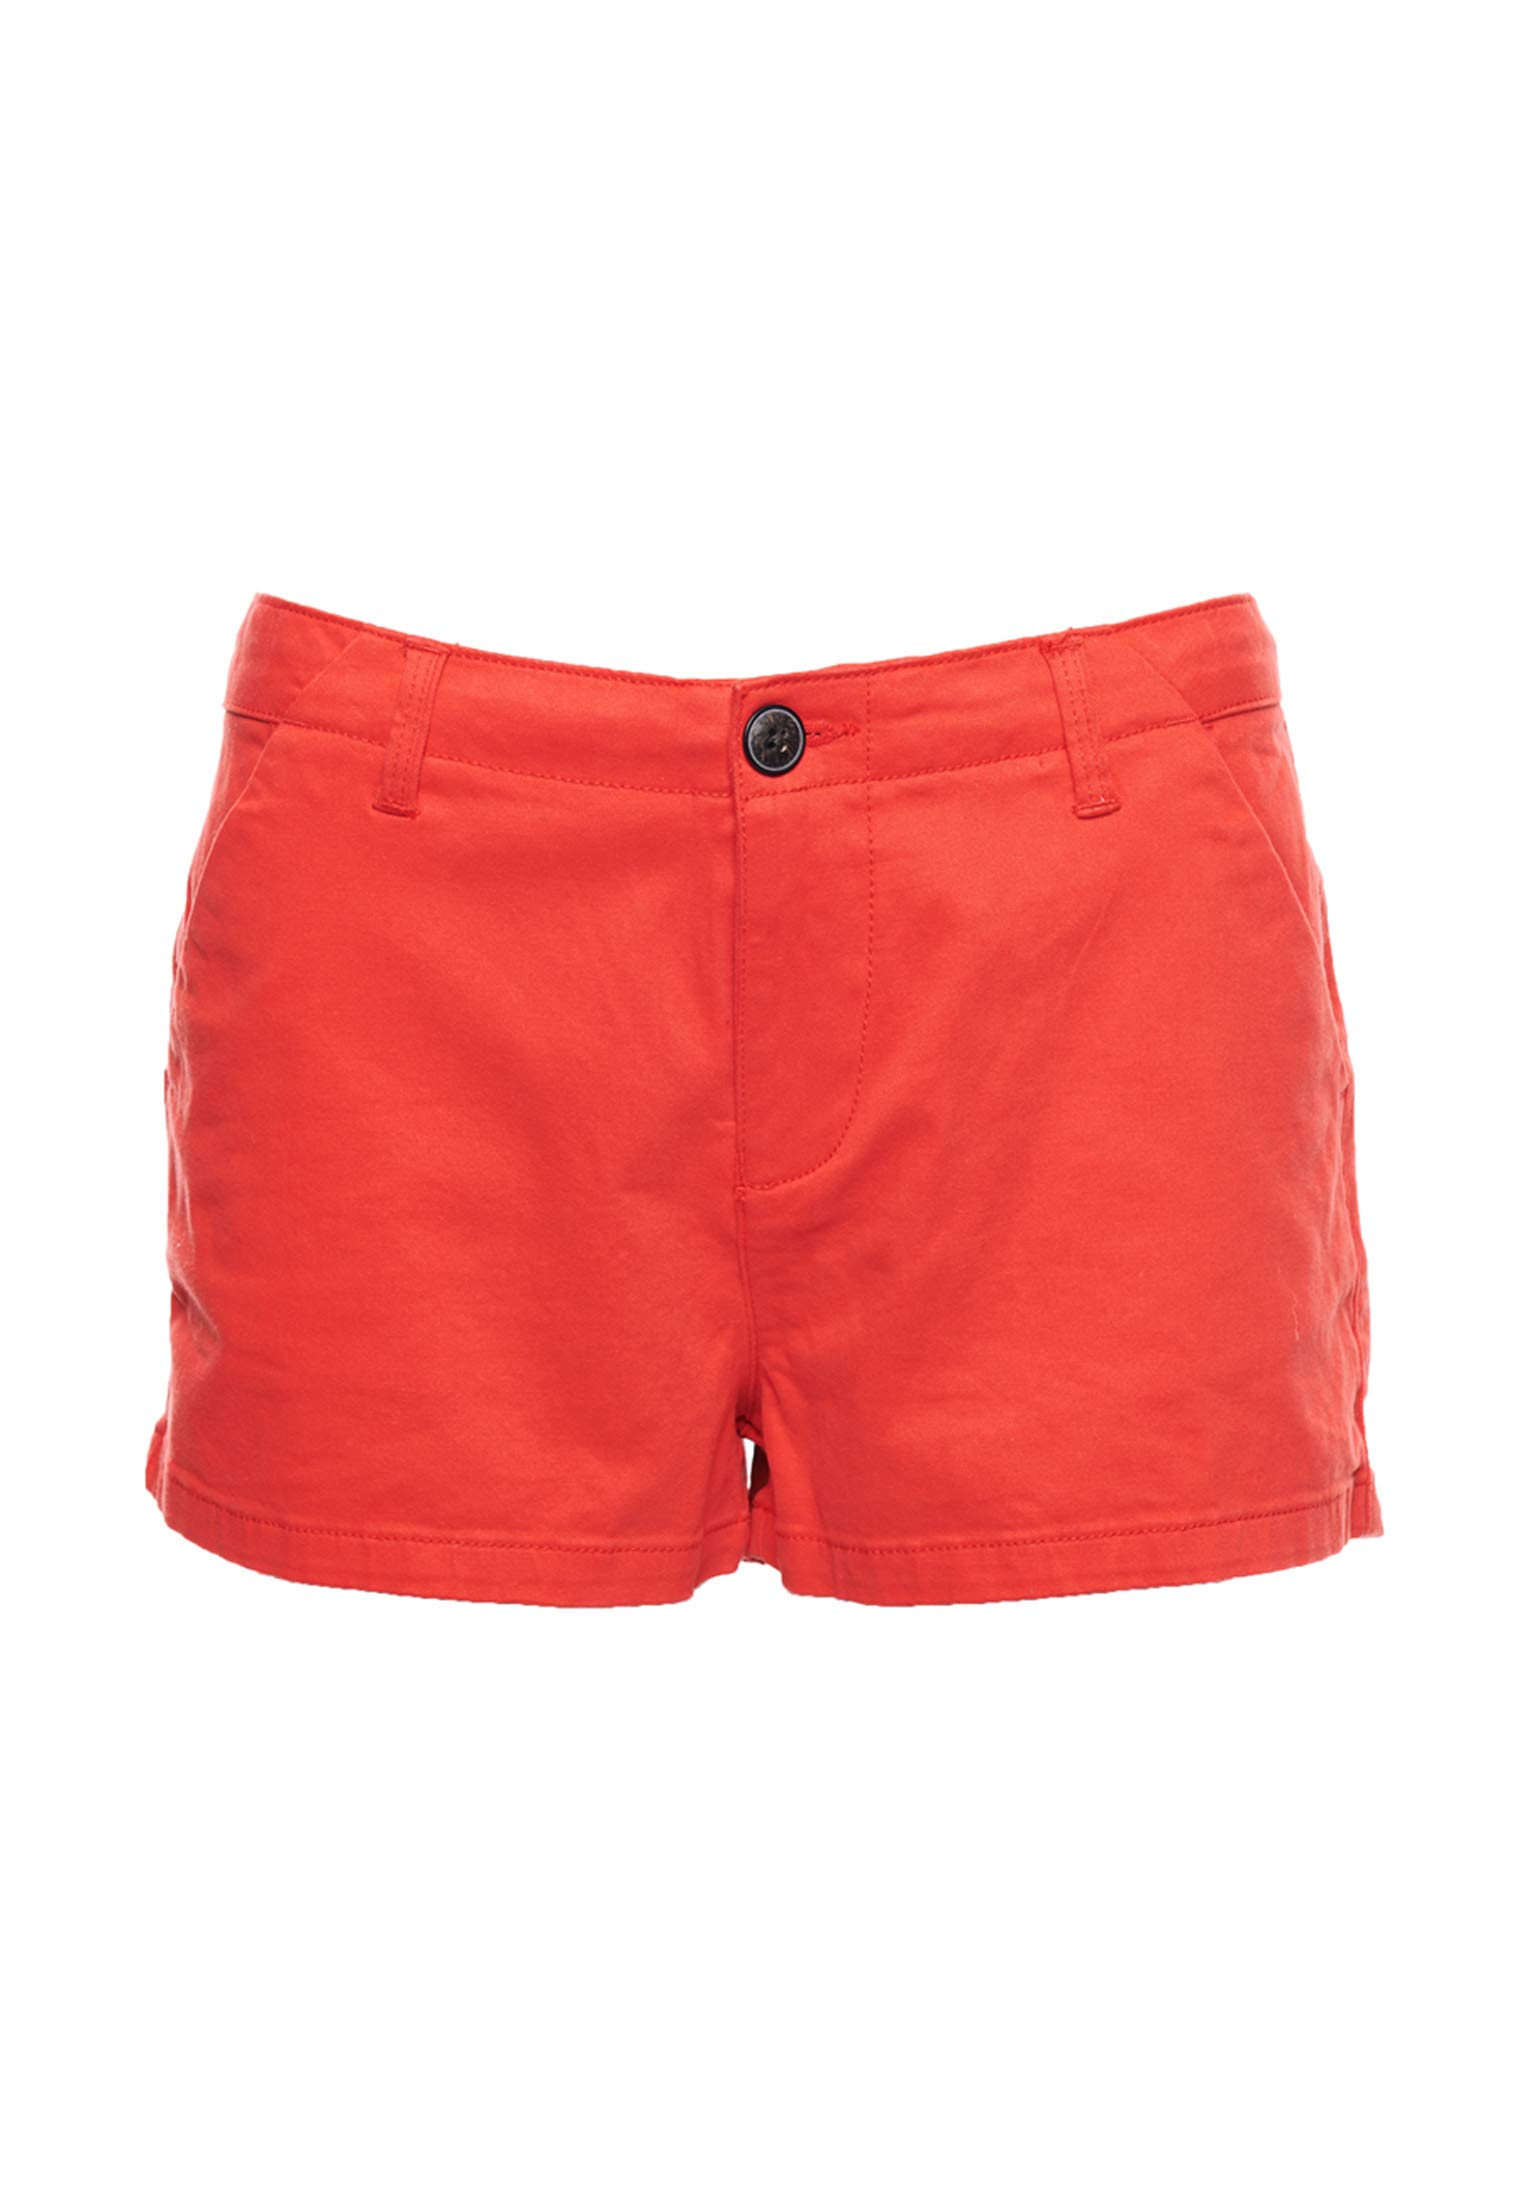 Superdry Damen Schlag Shorts Chino Hot Short, Rot (Apple Red OMG), 42 (Herstellergröße: L)